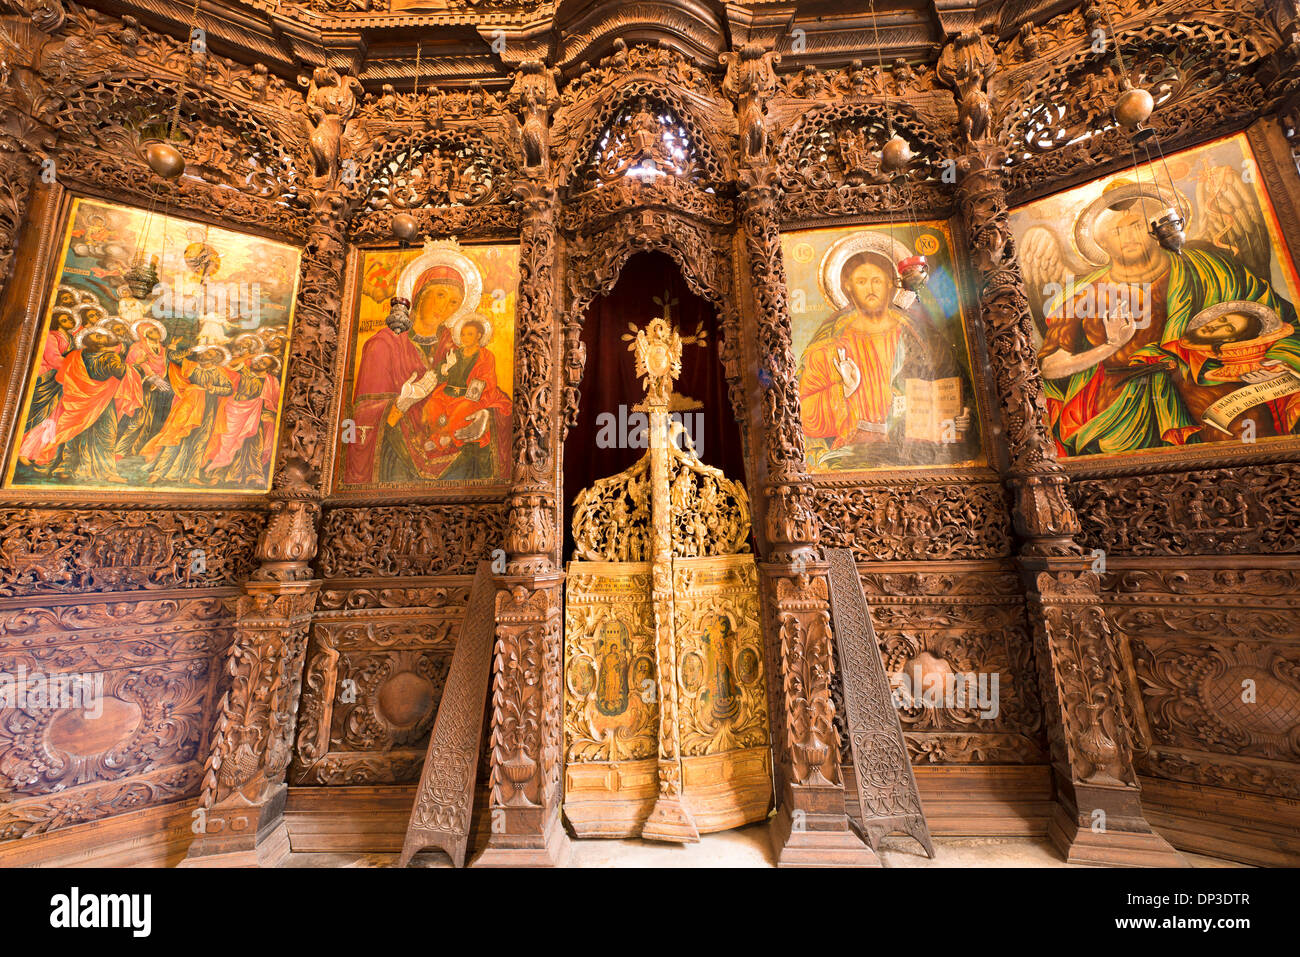 Kirche von Saint Thermen Skopje Mazedonien Western Balkan Region Europa Fresken und Holzschnitzereien geschnitzte Ikonostasen 17. Jahrhundert Stockfoto